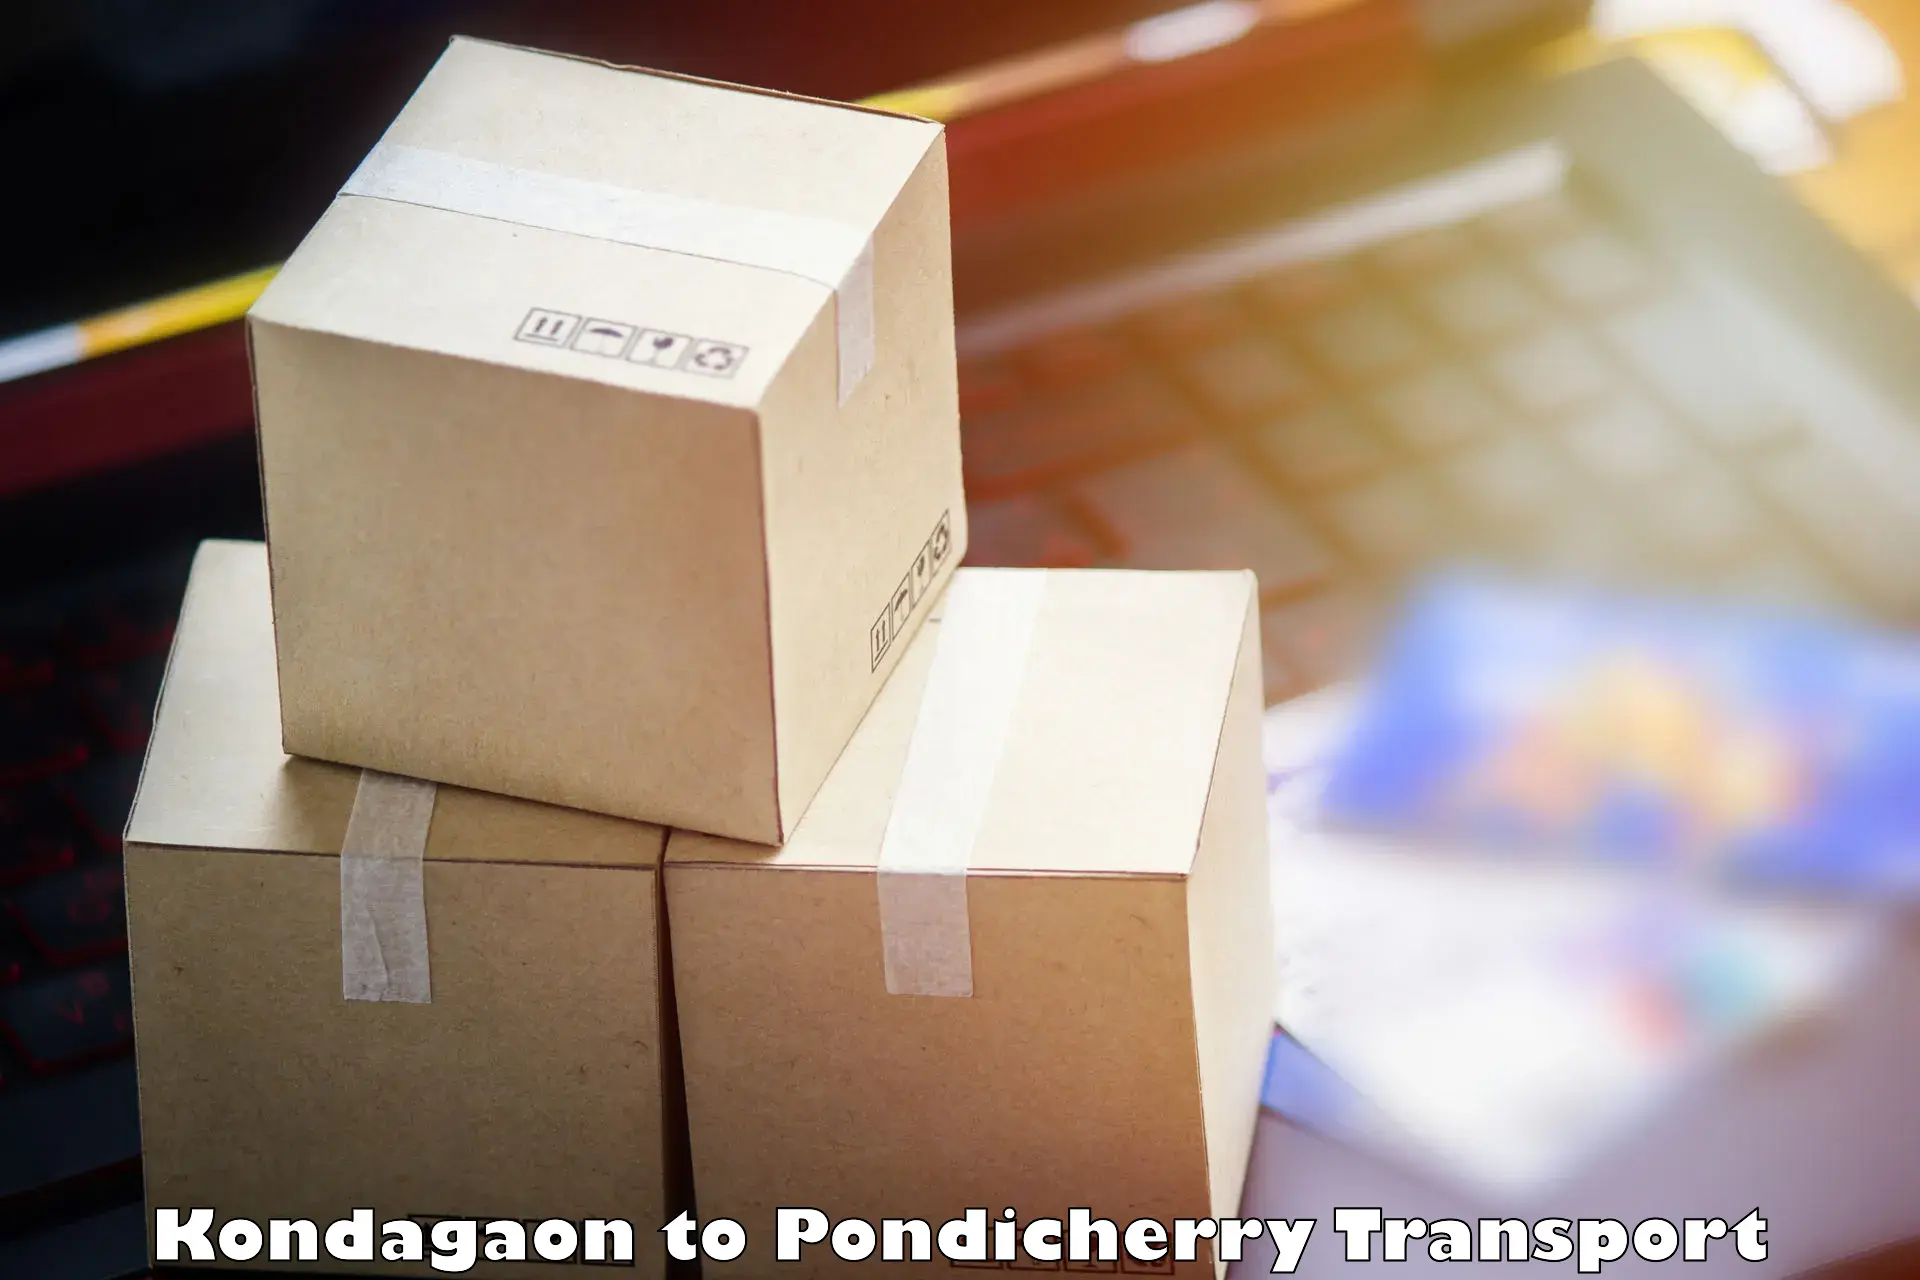 Shipping partner Kondagaon to Pondicherry